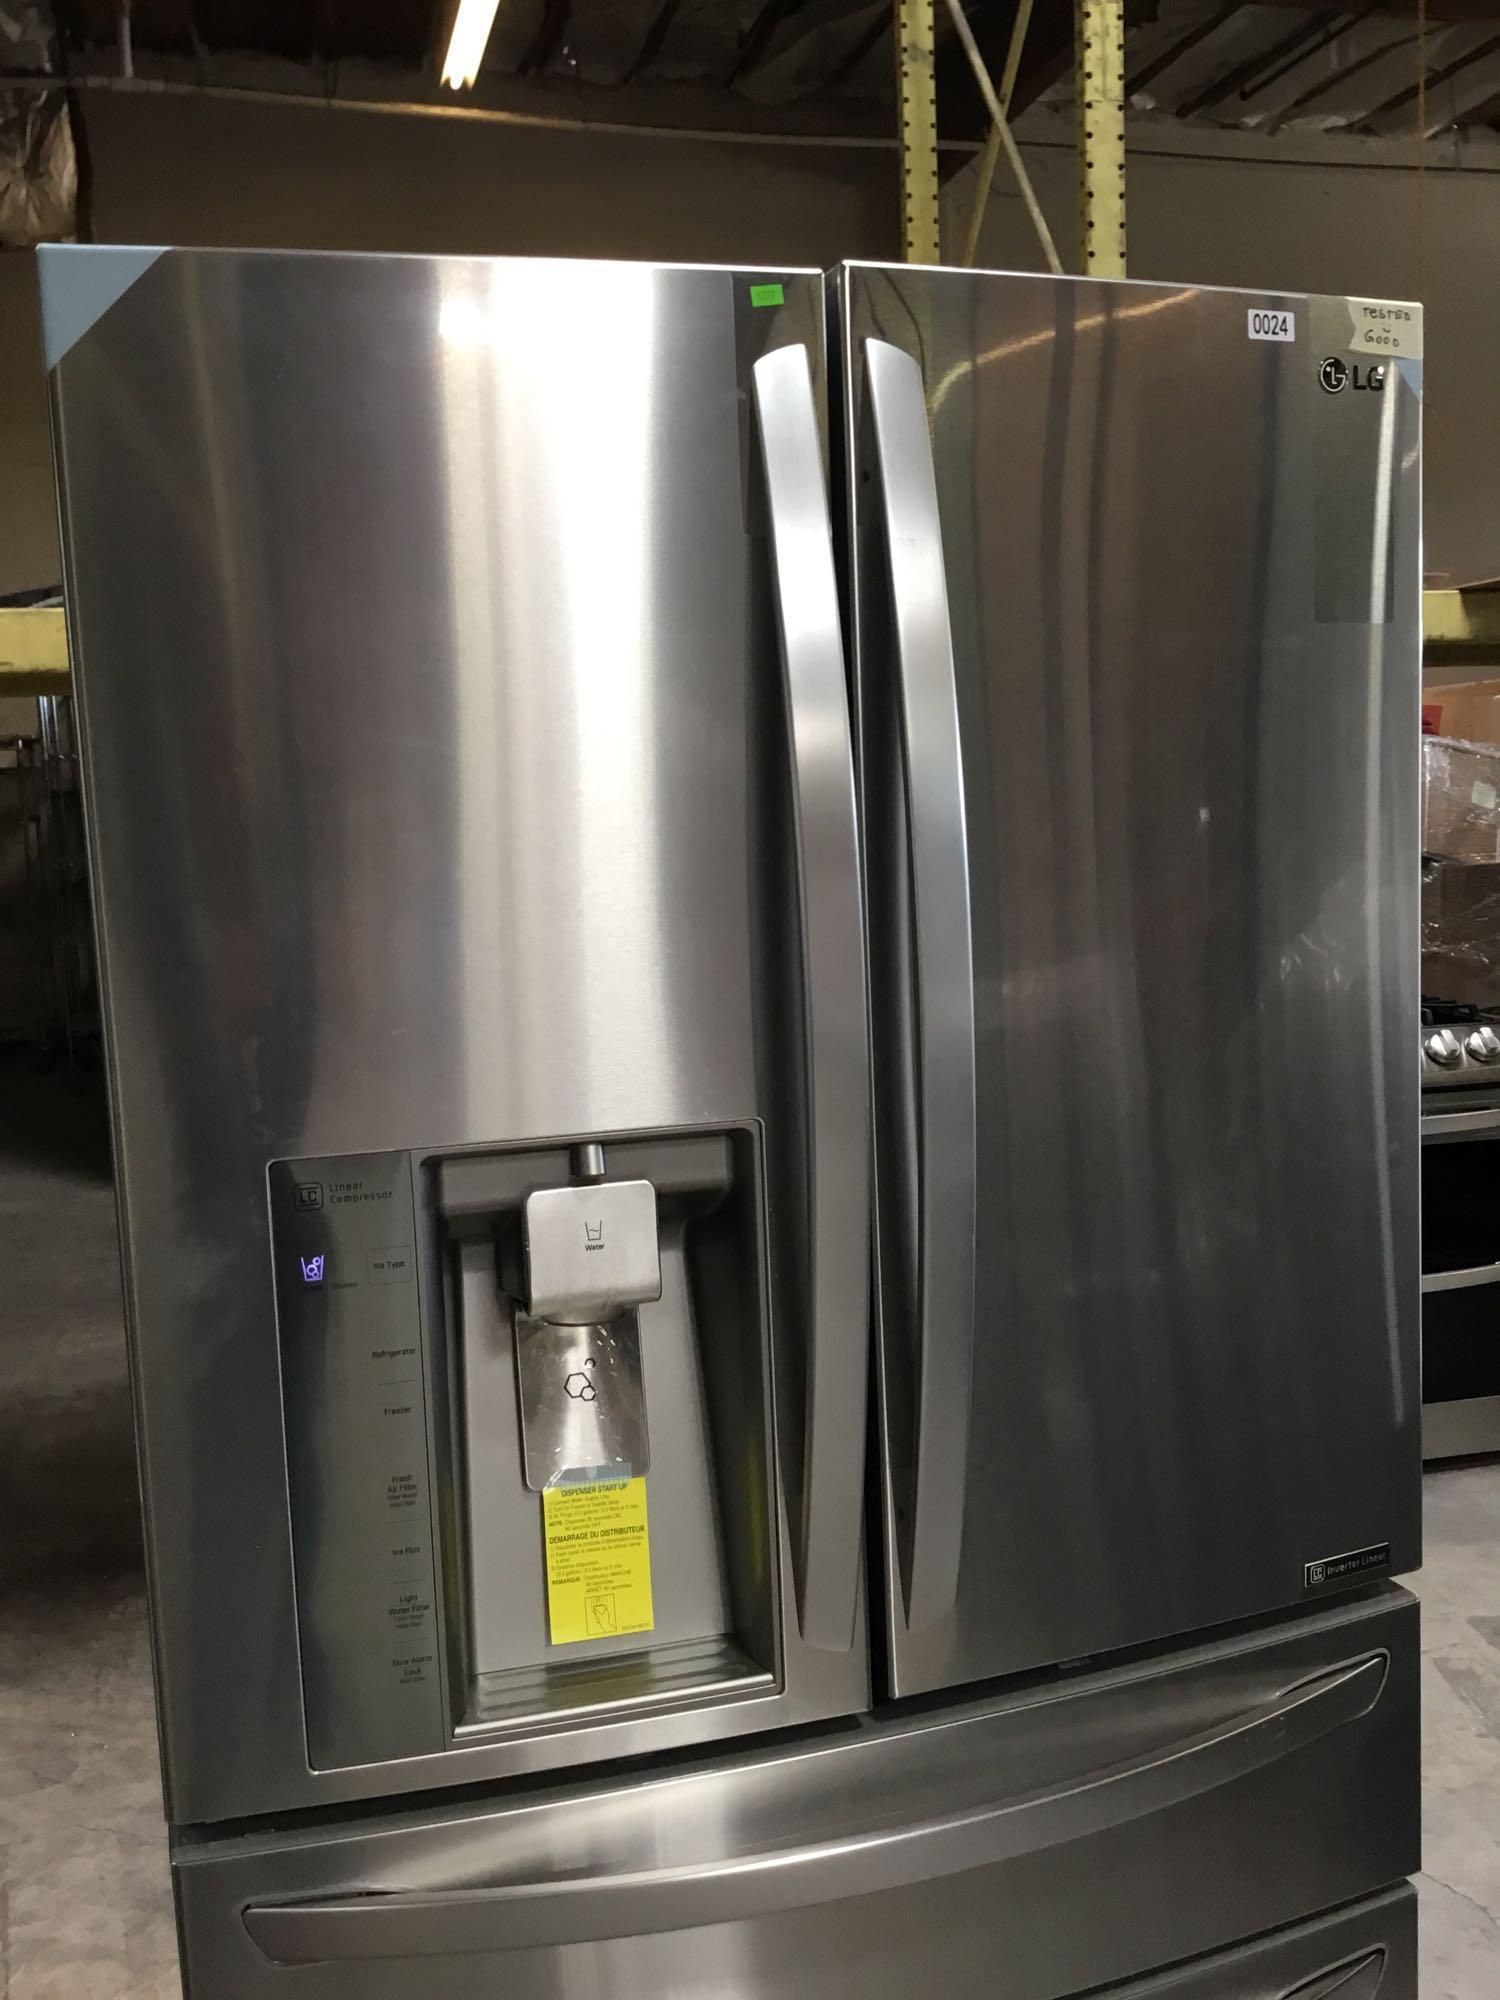 LG 22.7 Cu. Ft. Counter-Depth 4-Door French Door Refrigerator